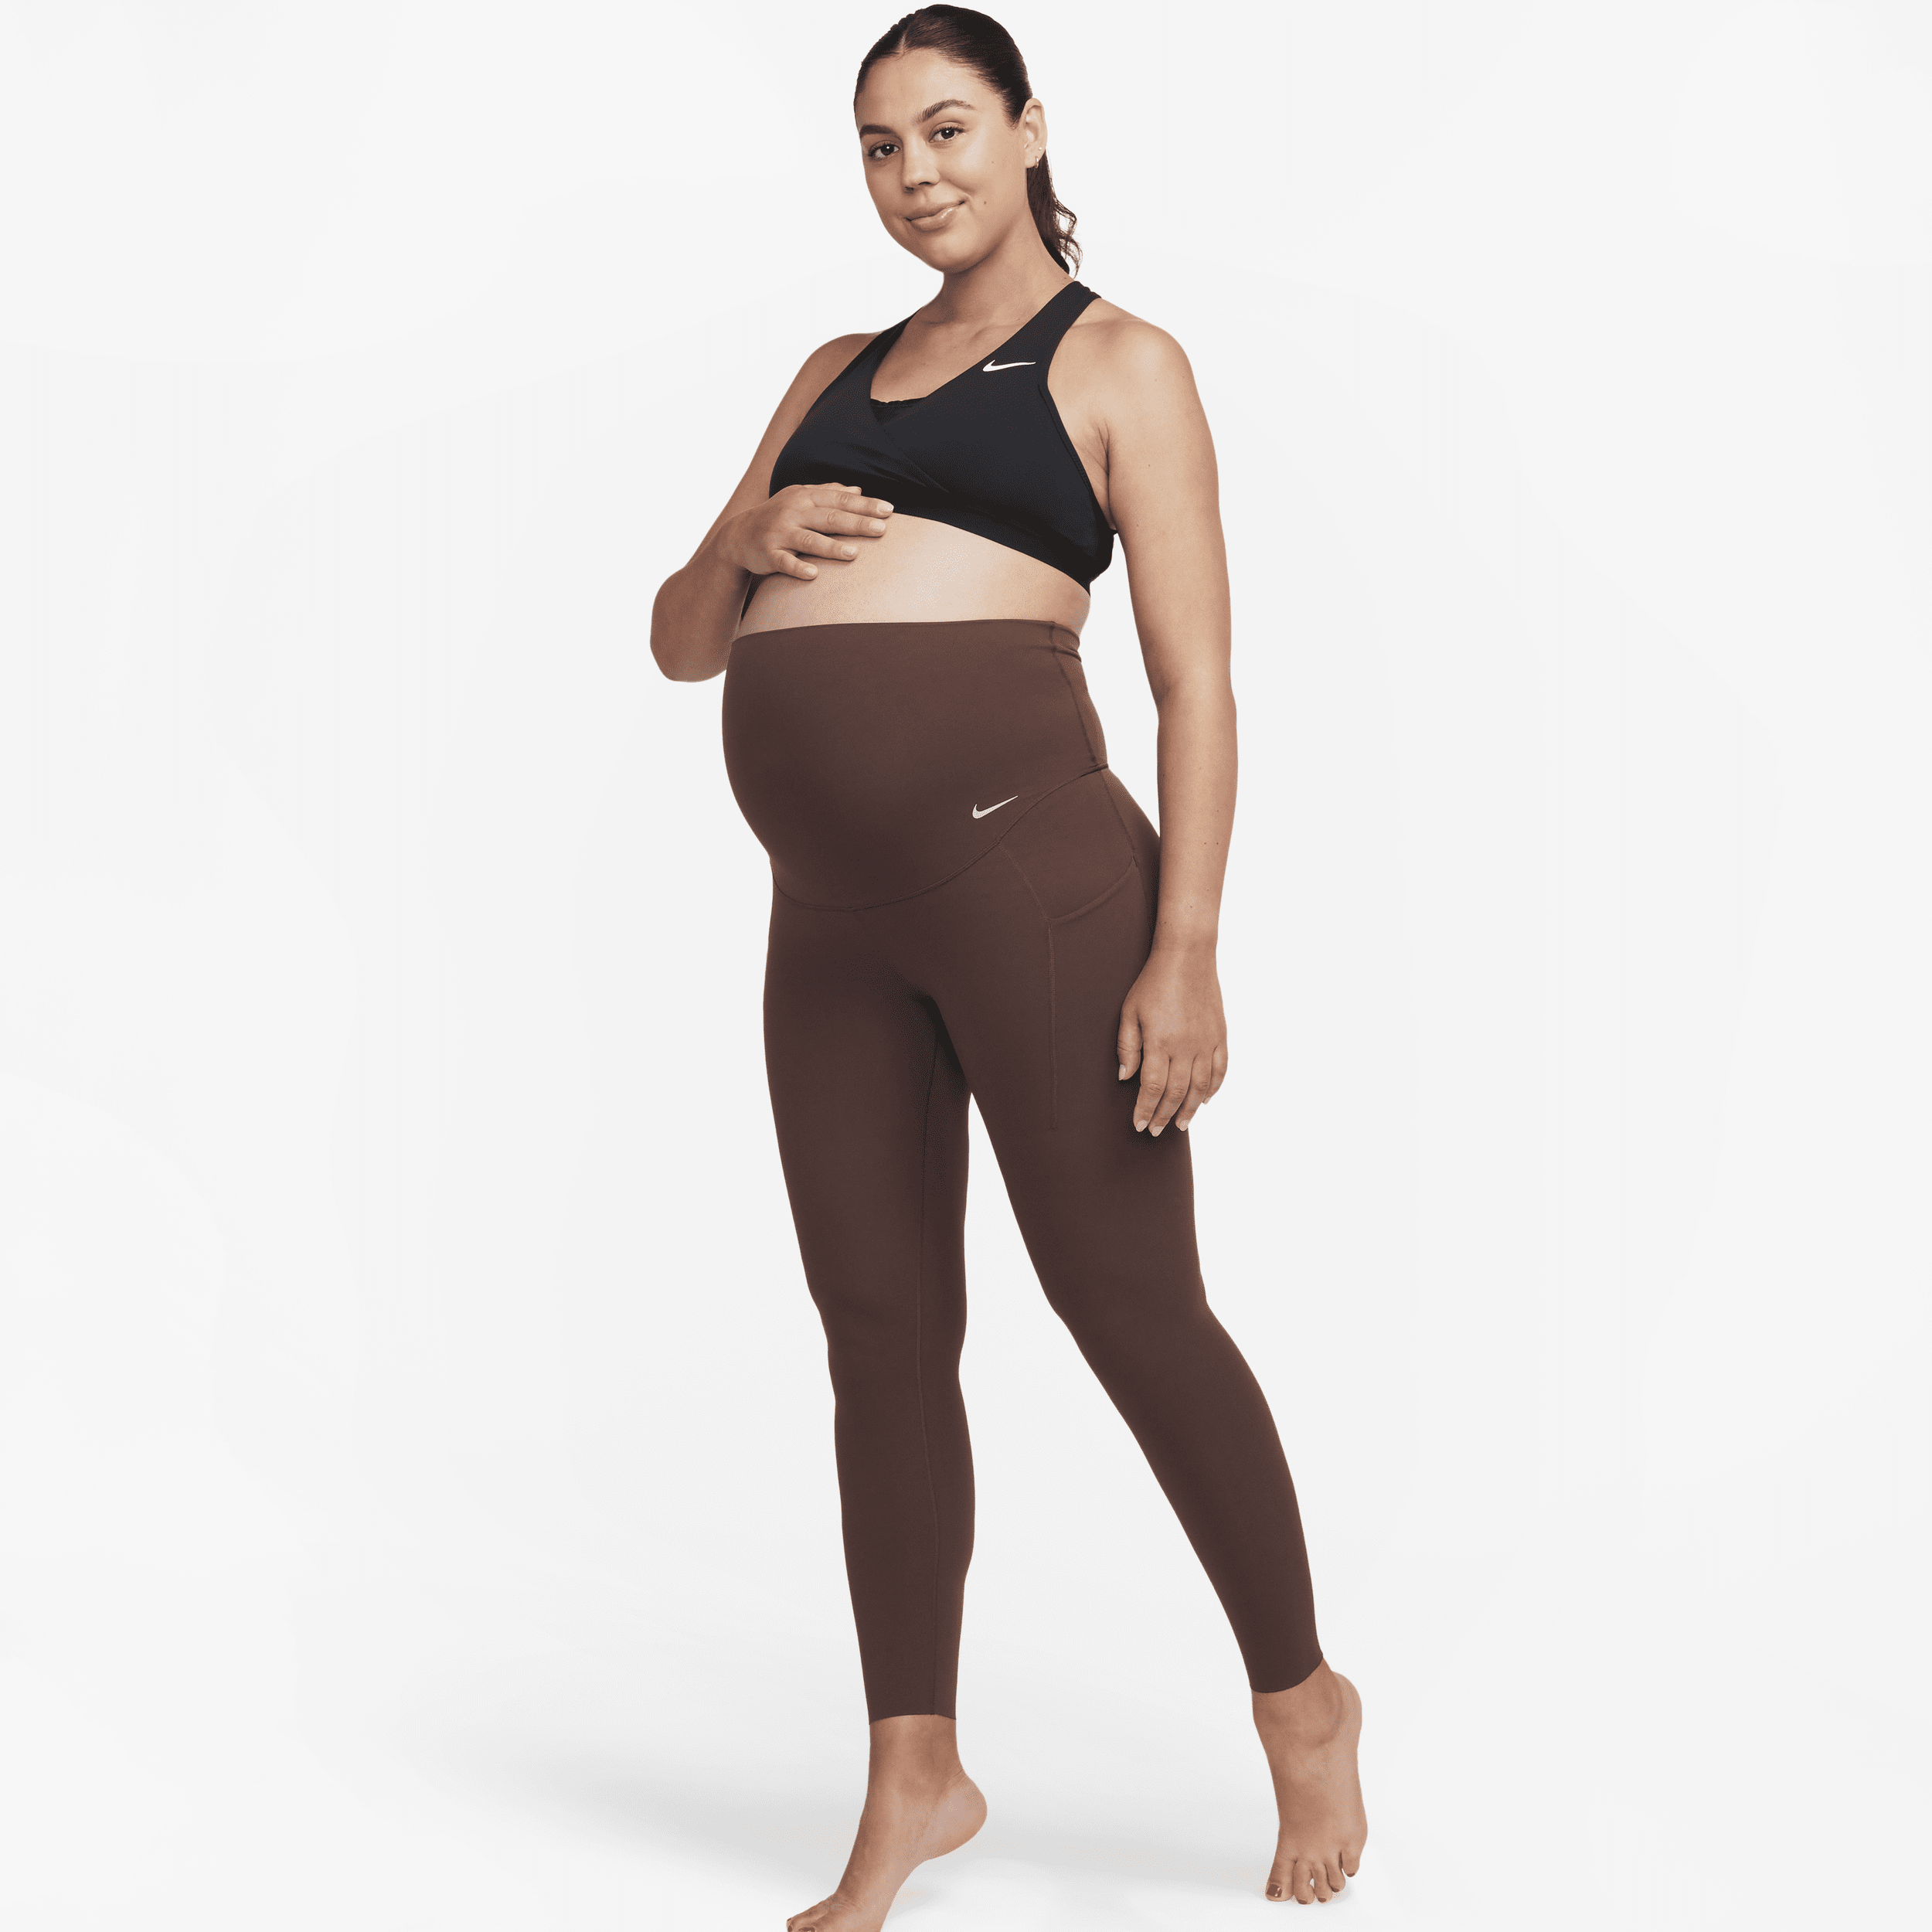 Nike Women's Zenvy (m) Gentle-support High-waisted 7/8 Leggings